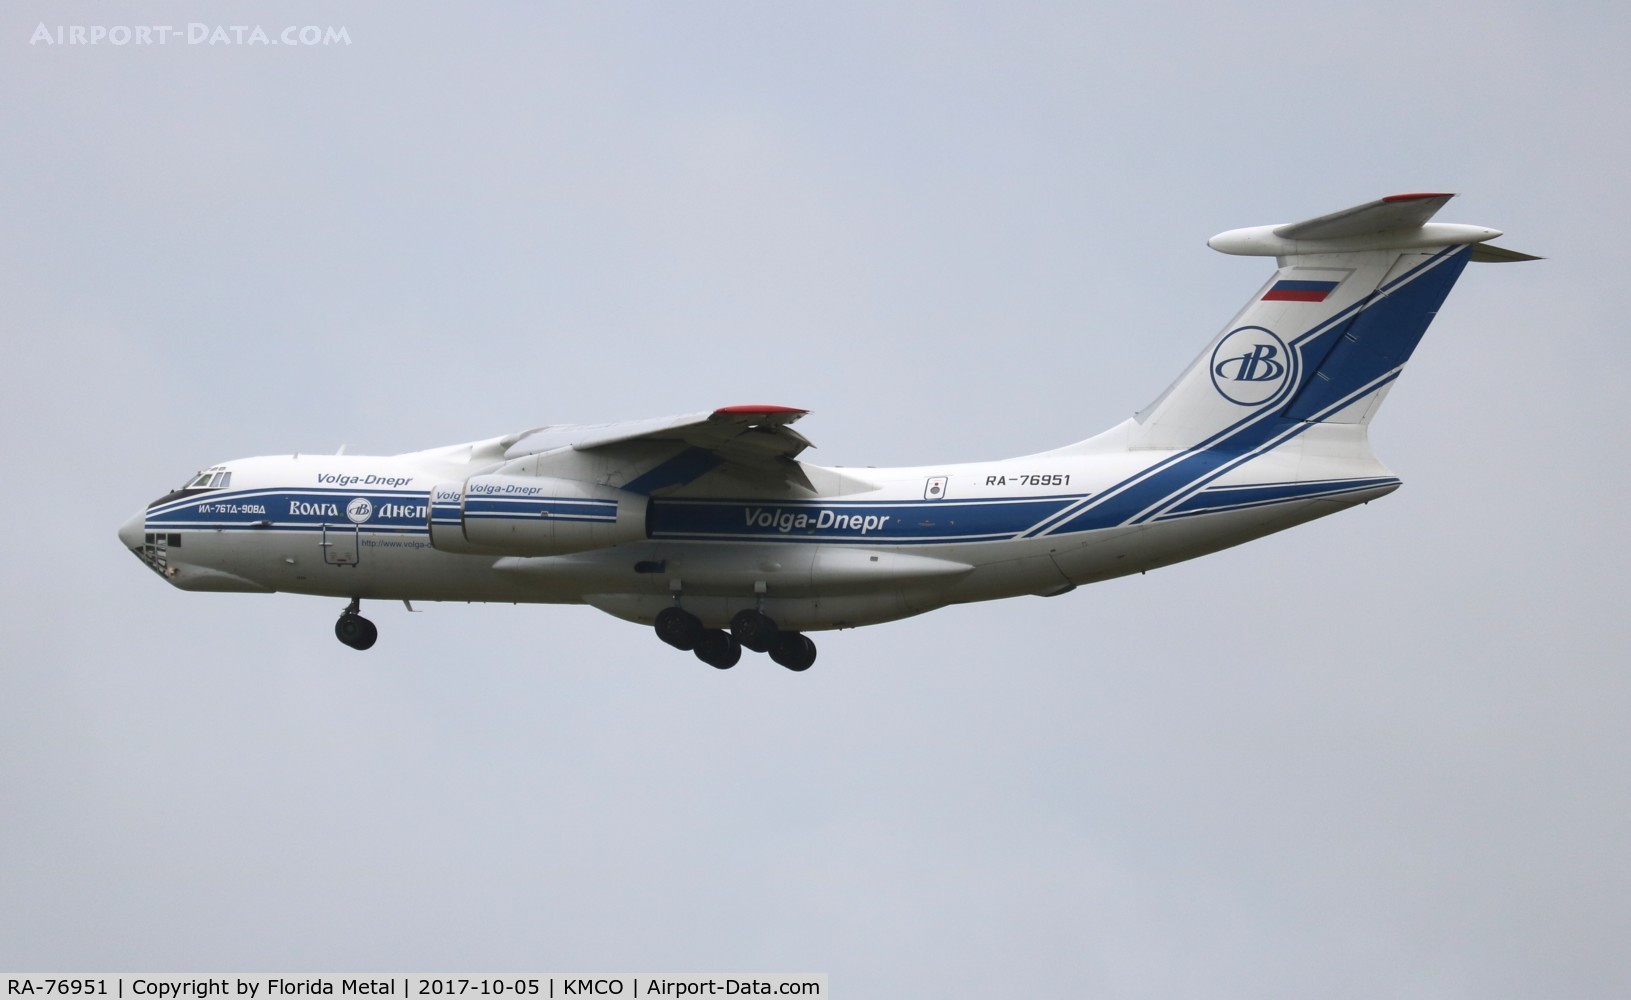 RA-76951, 2007 Ilyushin Il-76TD-90VD C/N 2073421704, Volga Il-76TD